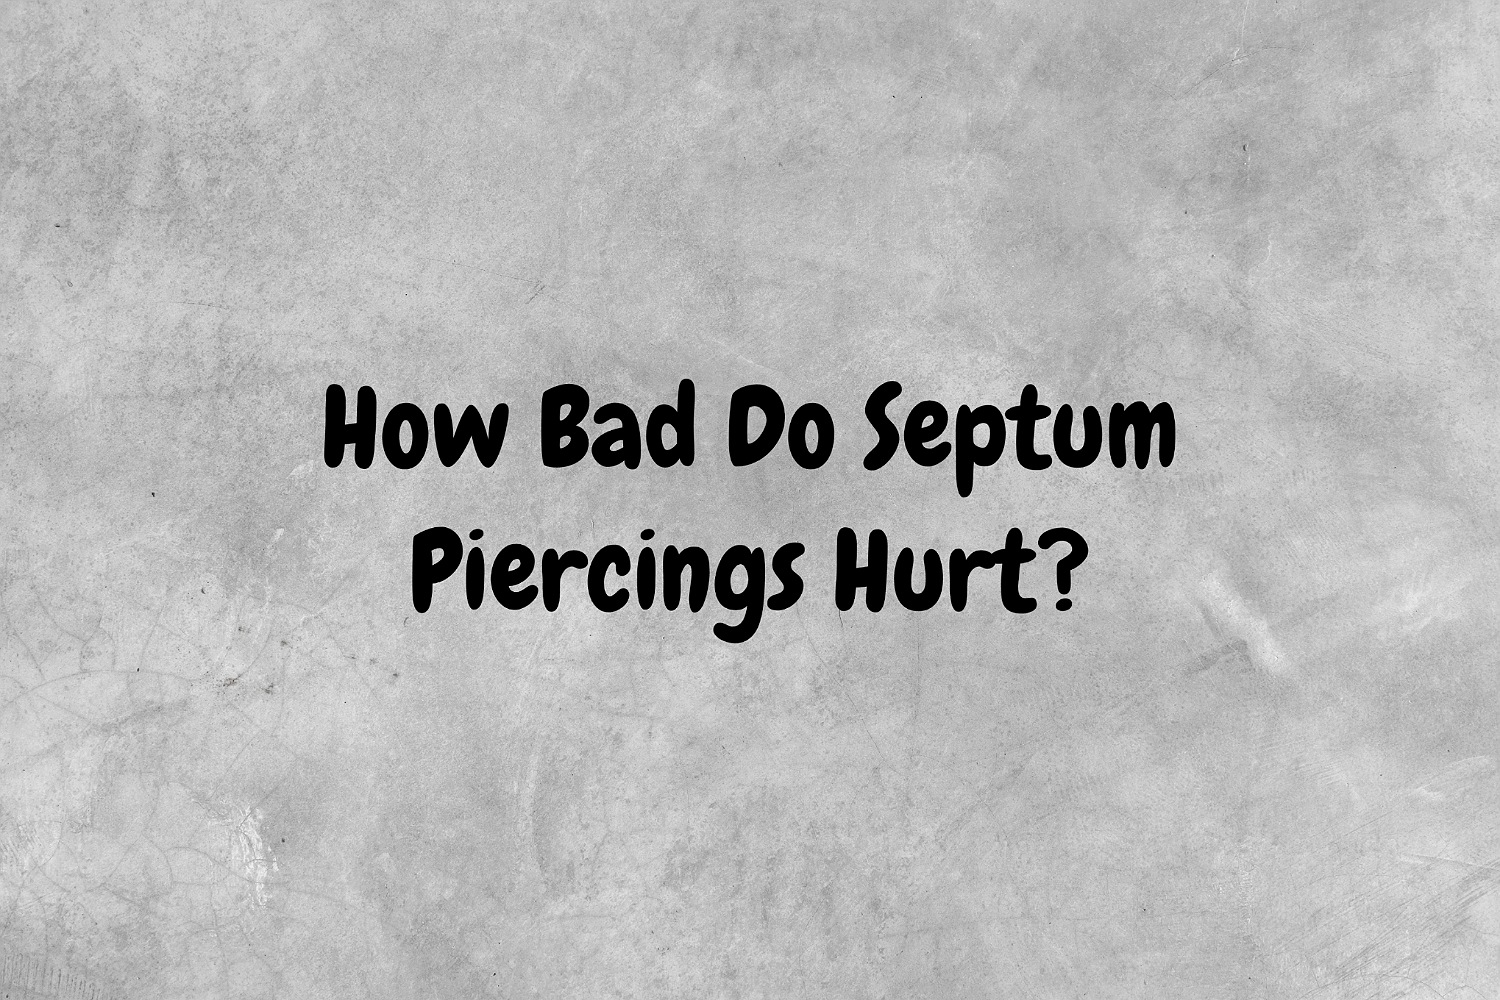 How Bad Do Septum Piercings Hurt?